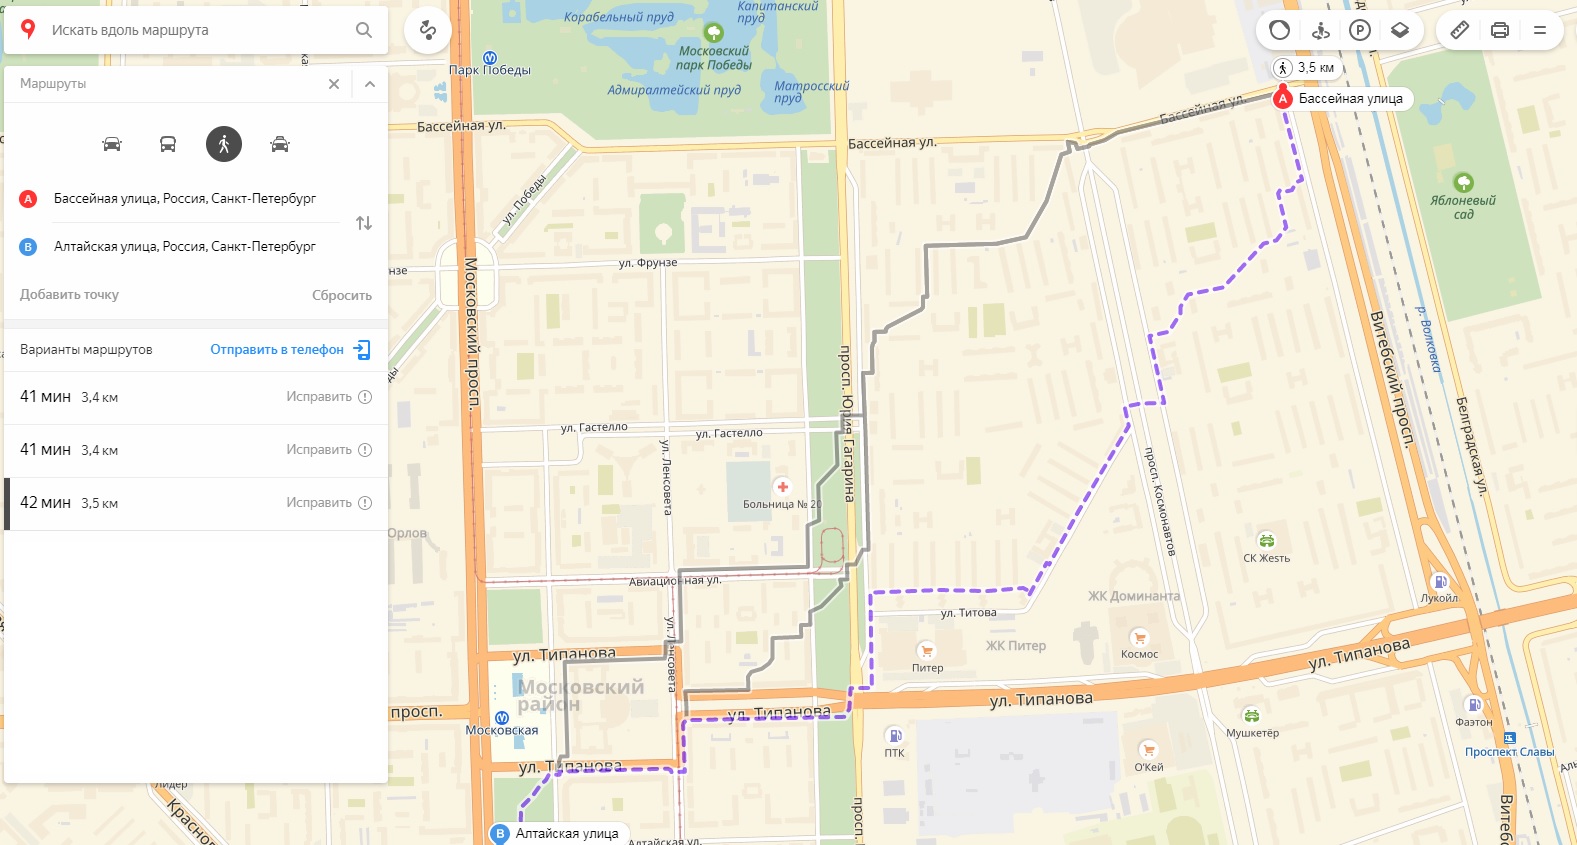 Гуляем по городу с умом: как я делал сервис для построения интересных пешеходных маршрутов - 9